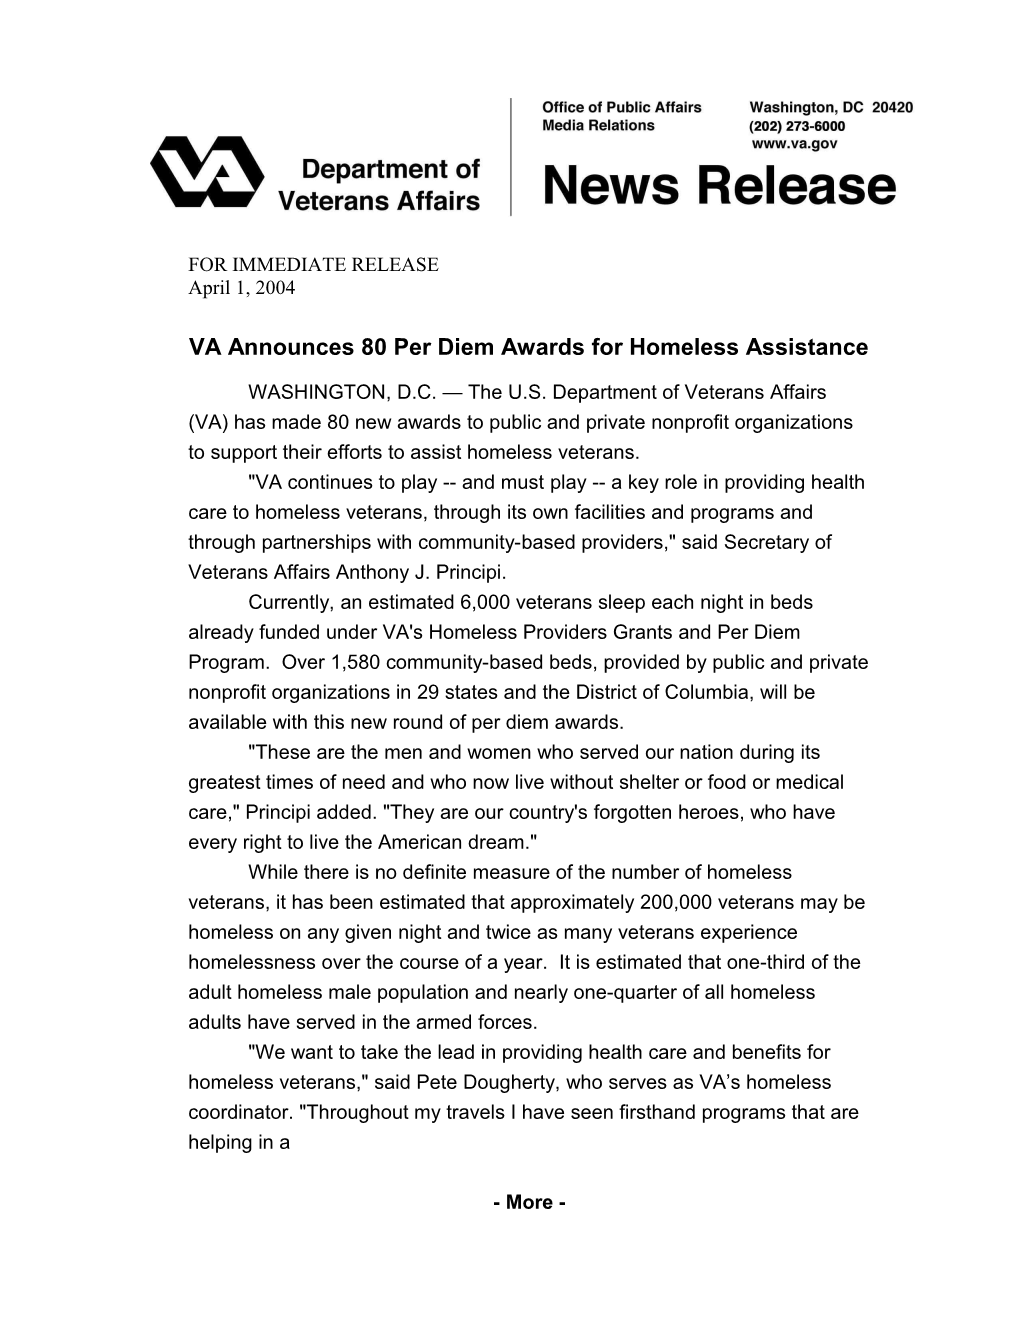 VA Announces 80 Per Diem Awards for Homeless Assistance